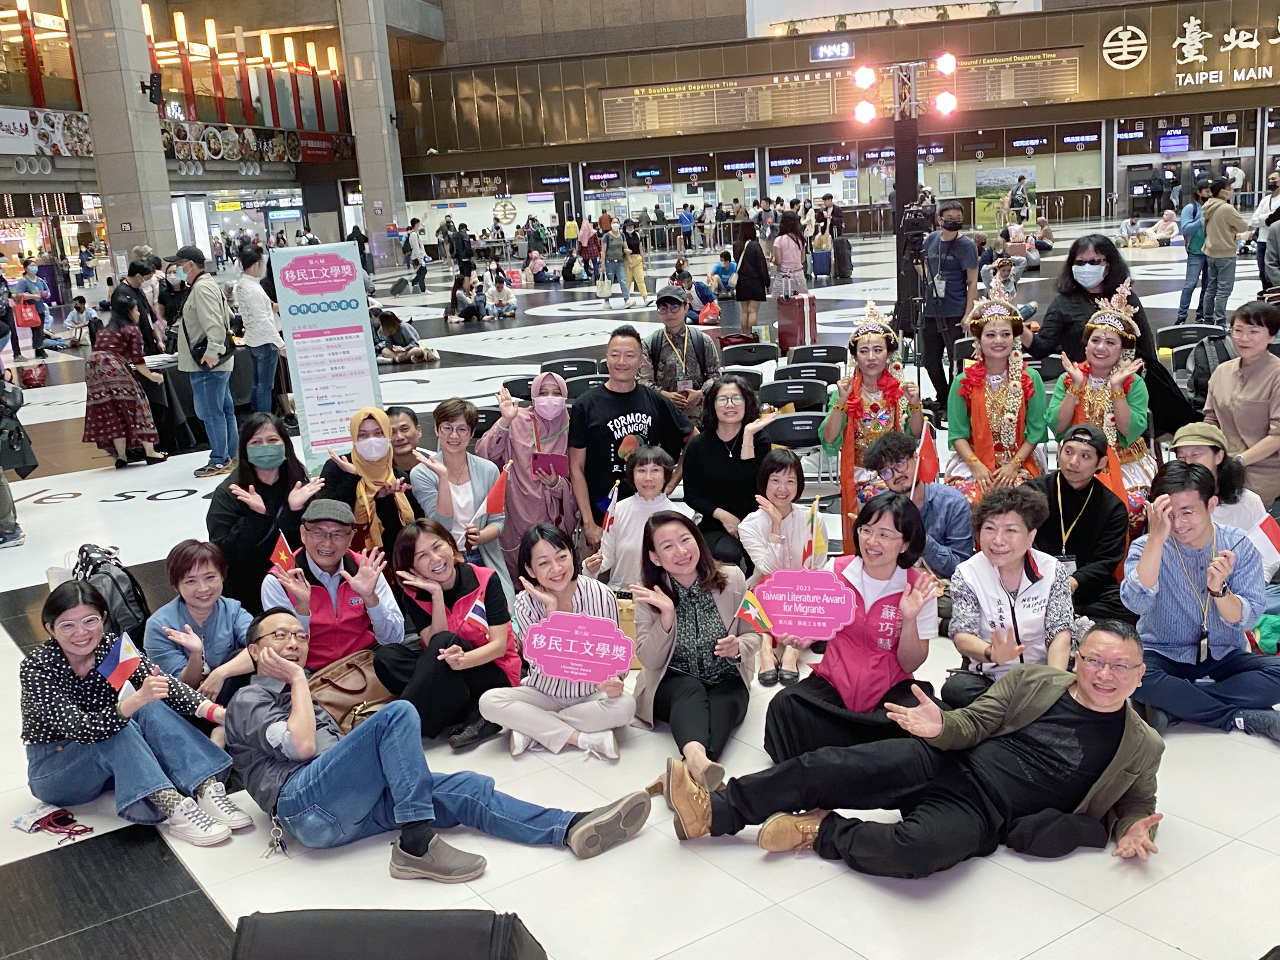 Chiều ngày 12/3, tại ga xe lửa Đài Bắc đã có hoạt động tuyên bố Giải thưởng Văn học dành cho Di dân mới và Lao động di trú lần thứ 8 chính thức khởi động, thời hạn nộp bài từ nay đến ngày 5/6.